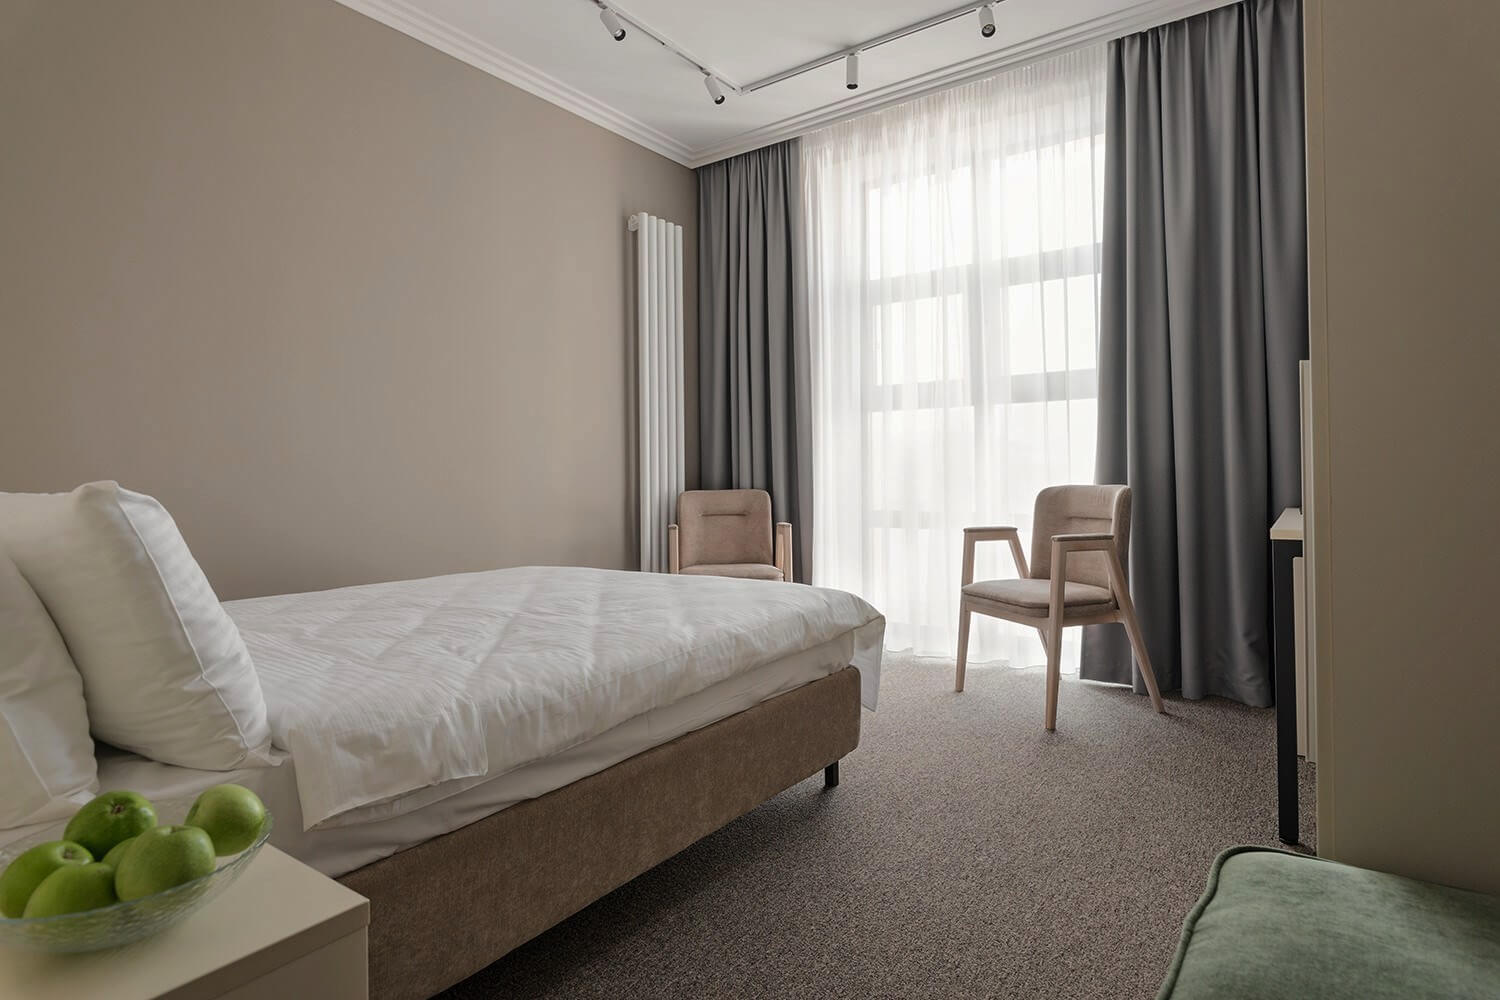 В номере большие панорамные окна, кровать застелена белоснежным бельем.